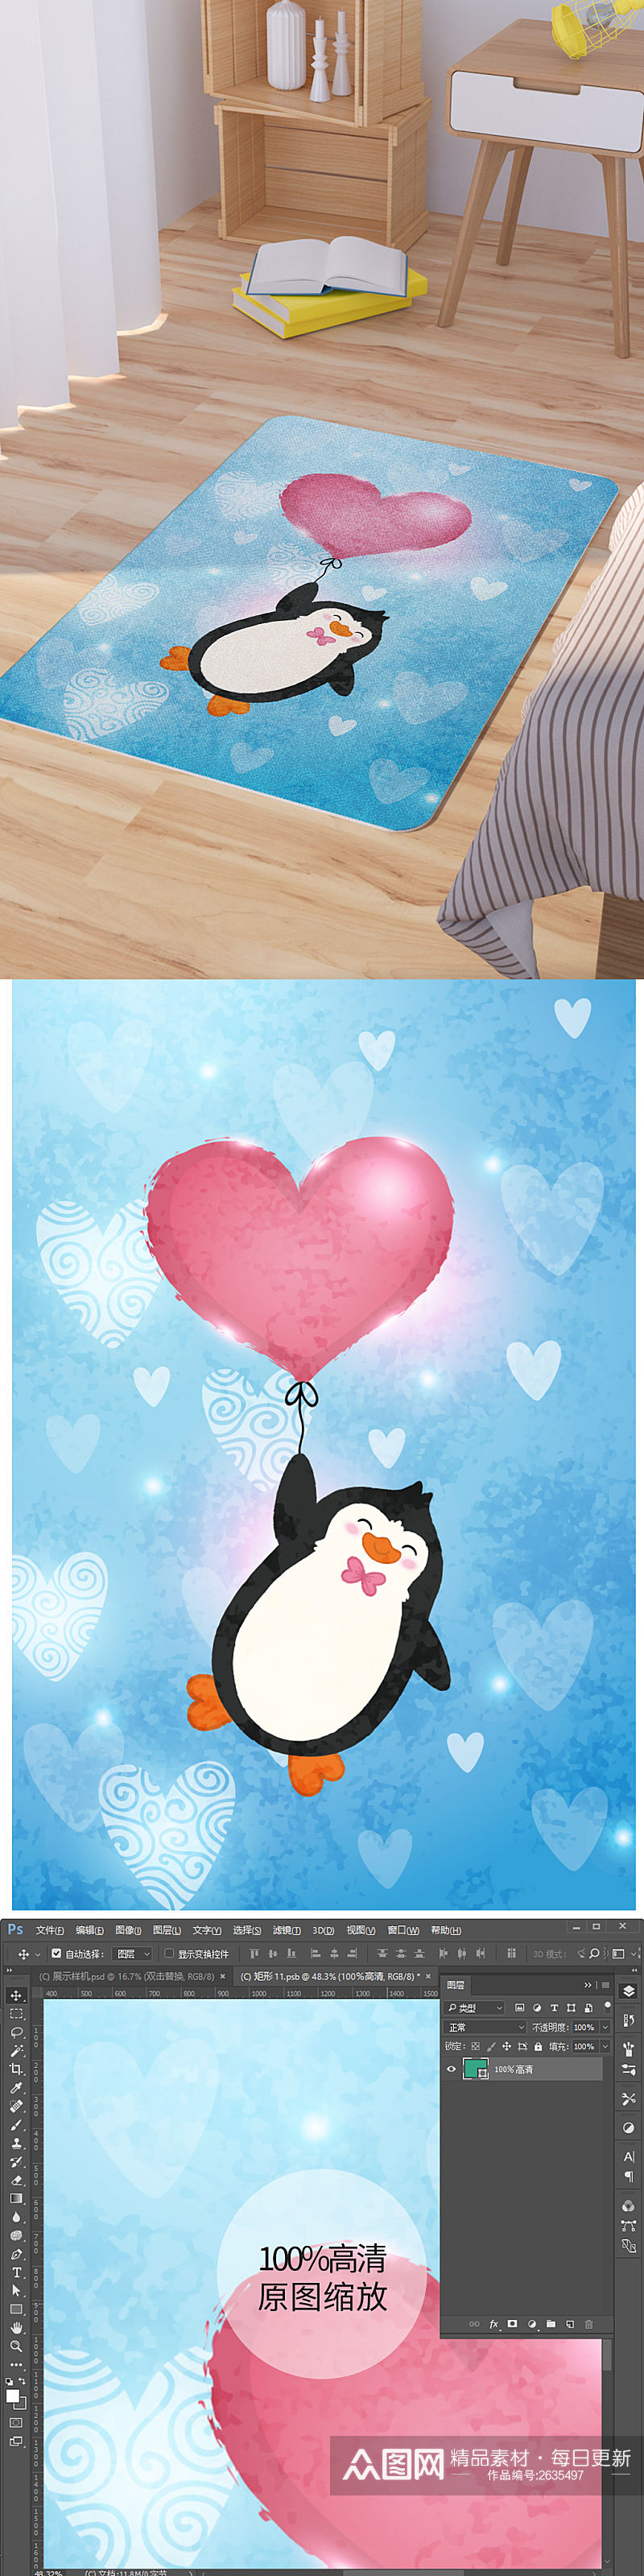 矢量手绘卡通可爱企鹅爱心气球脚垫地毯图案素材